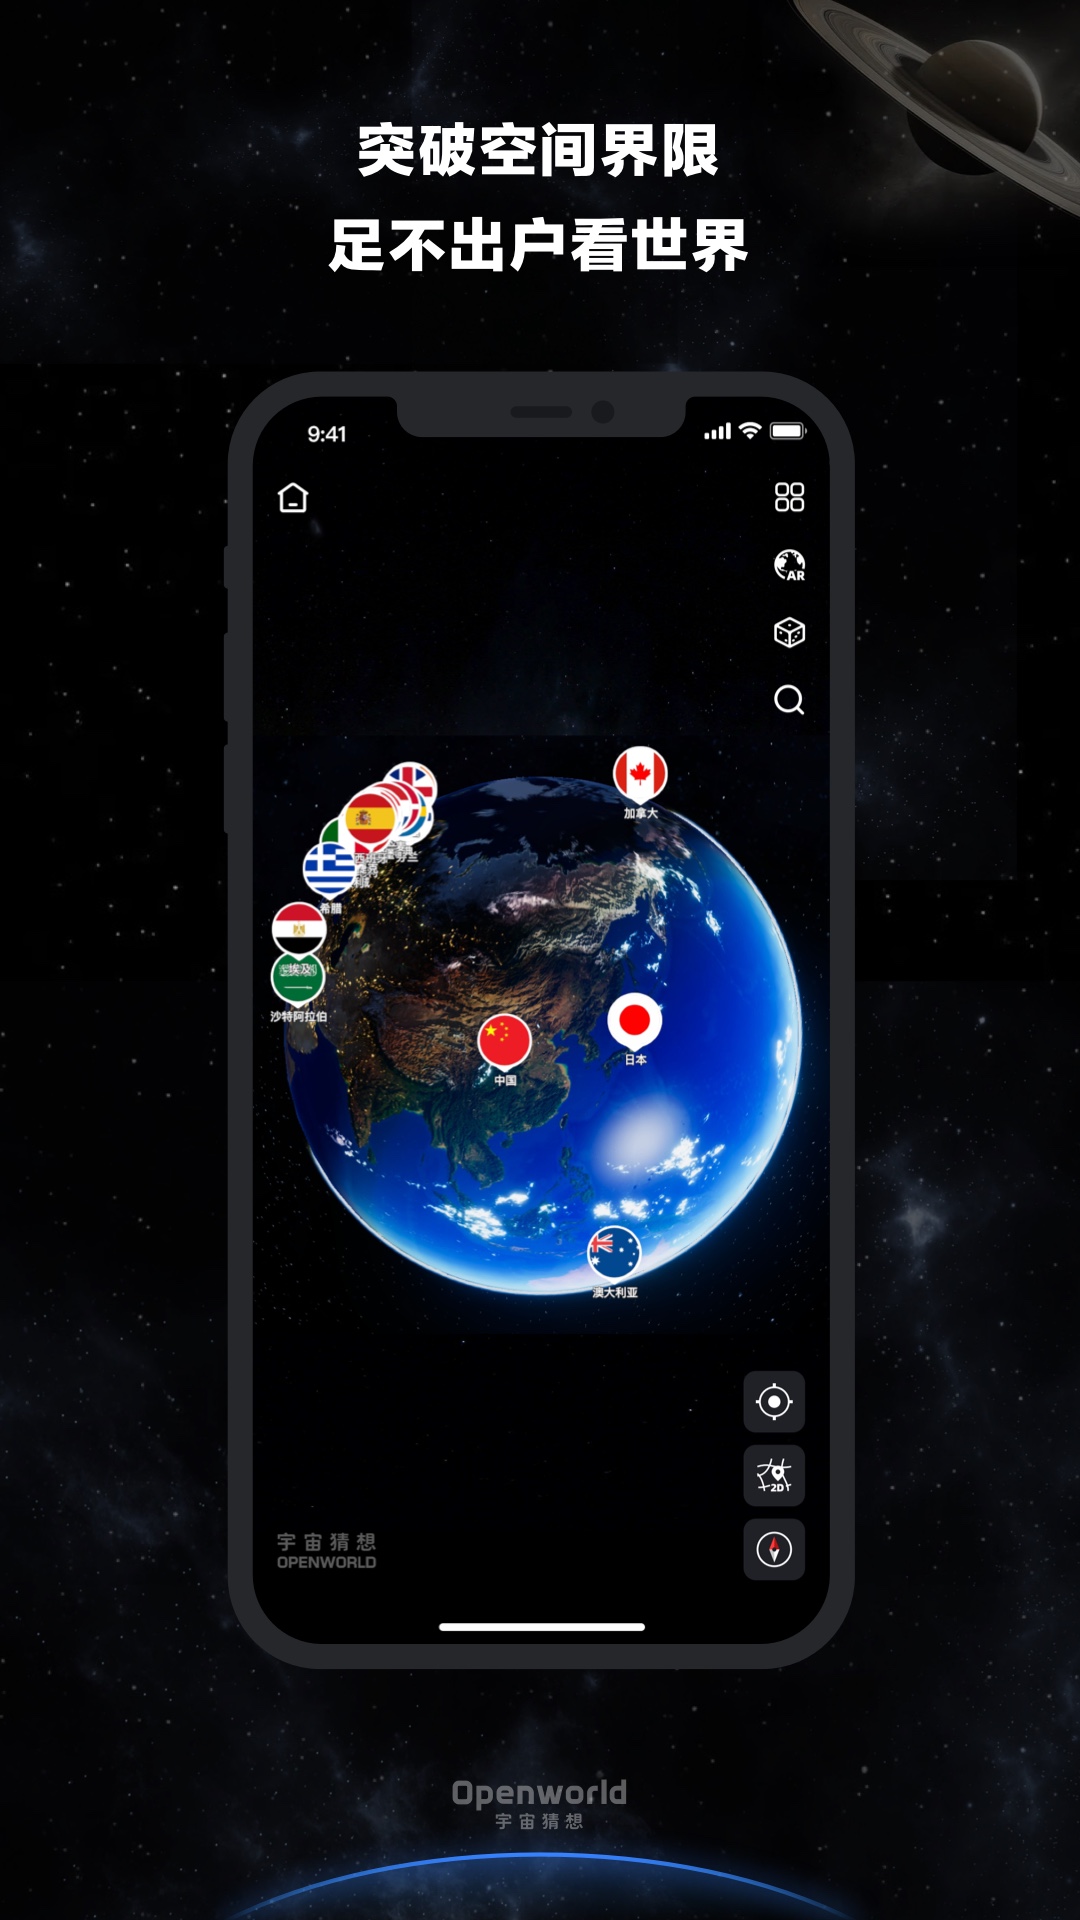 宇宙猜想app下载,宇宙猜想元宇宙社区app官方版 v1.0.6